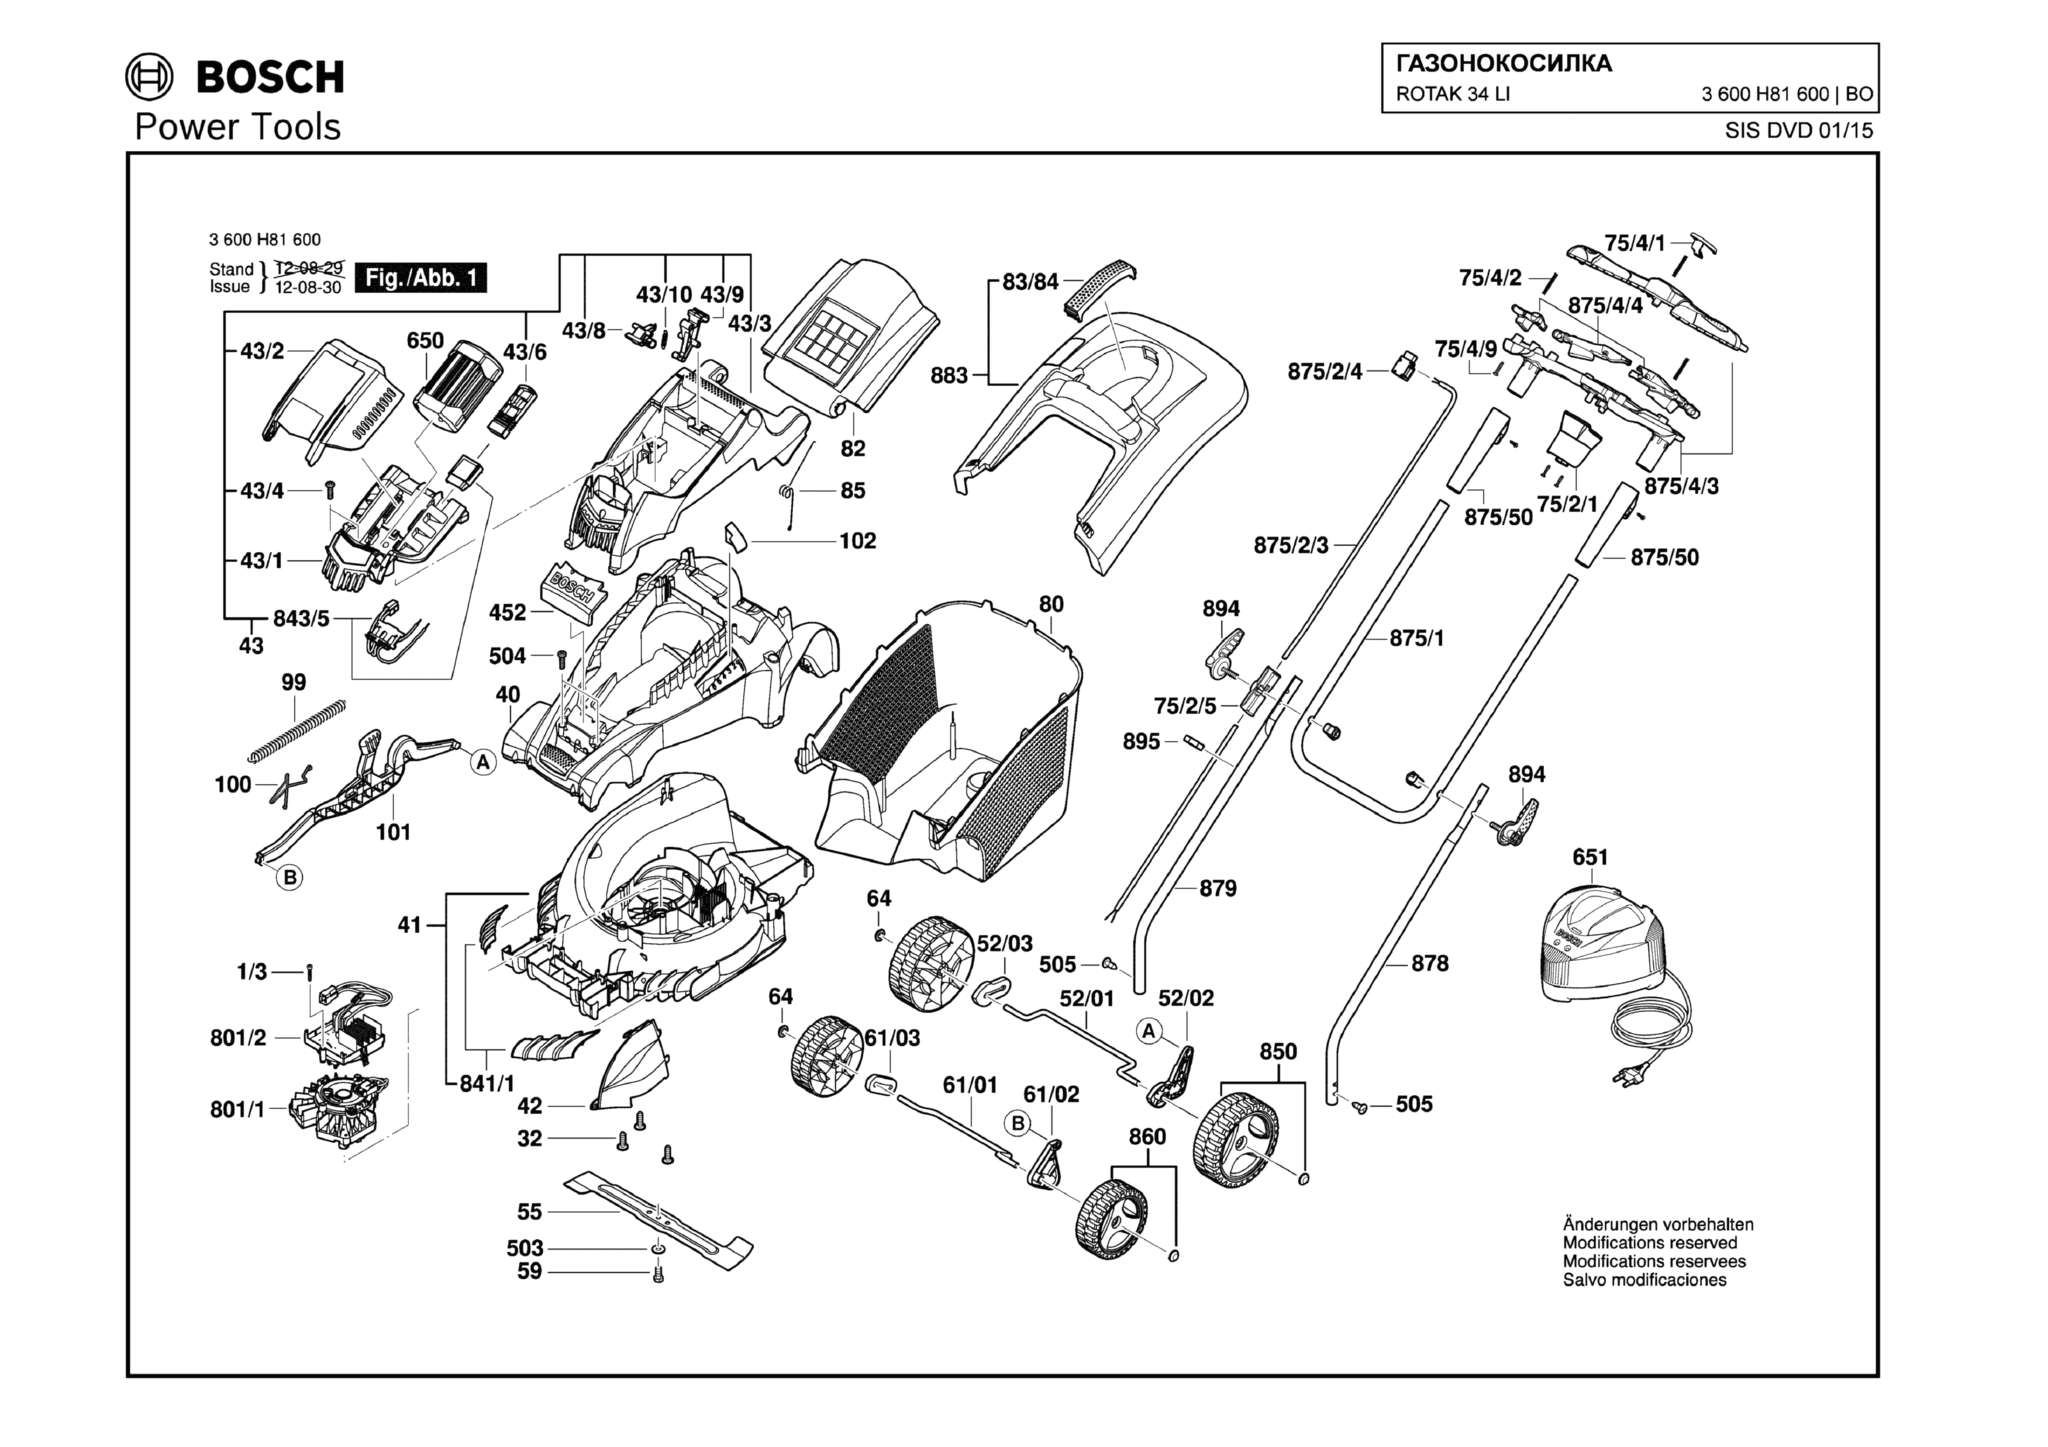 Запчасти, схема и деталировка Bosch ROTAK 34 LI (ERGOFLEX) (ТИП 3600H81600)